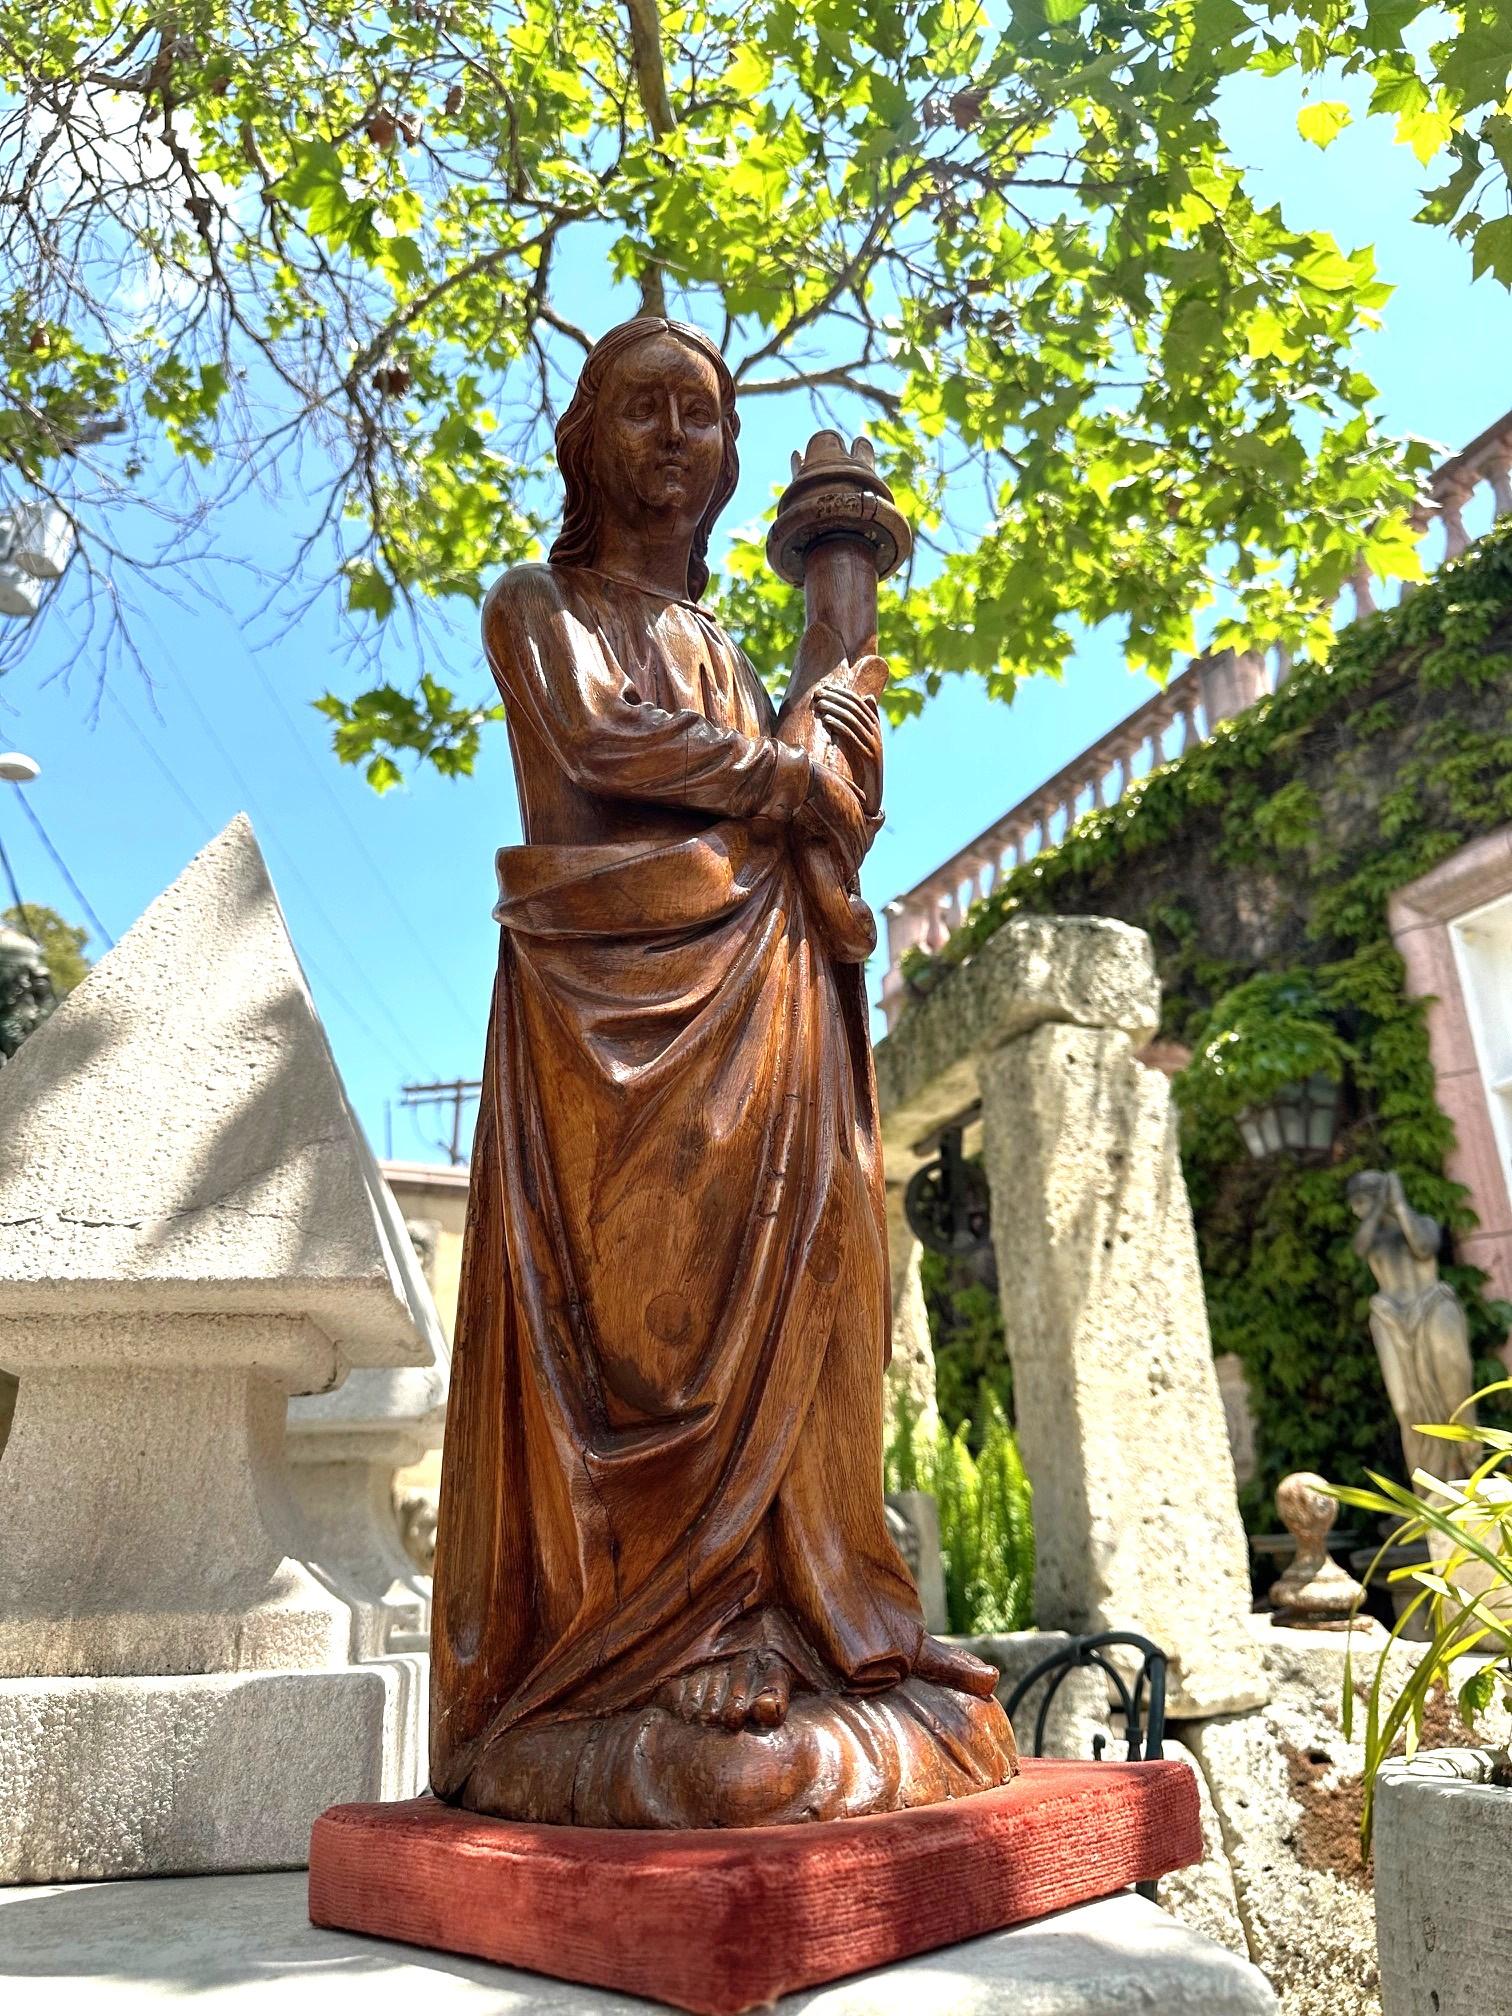 Sculpture en bois sculptée à la main Statue d'ange Antiquités Los Angeles Californie Exquise statue en bois sculptée à la main du 19ème siècle représentant un ange tenant une torche (porte-bougie amovible). Les sculptures des statues font preuve